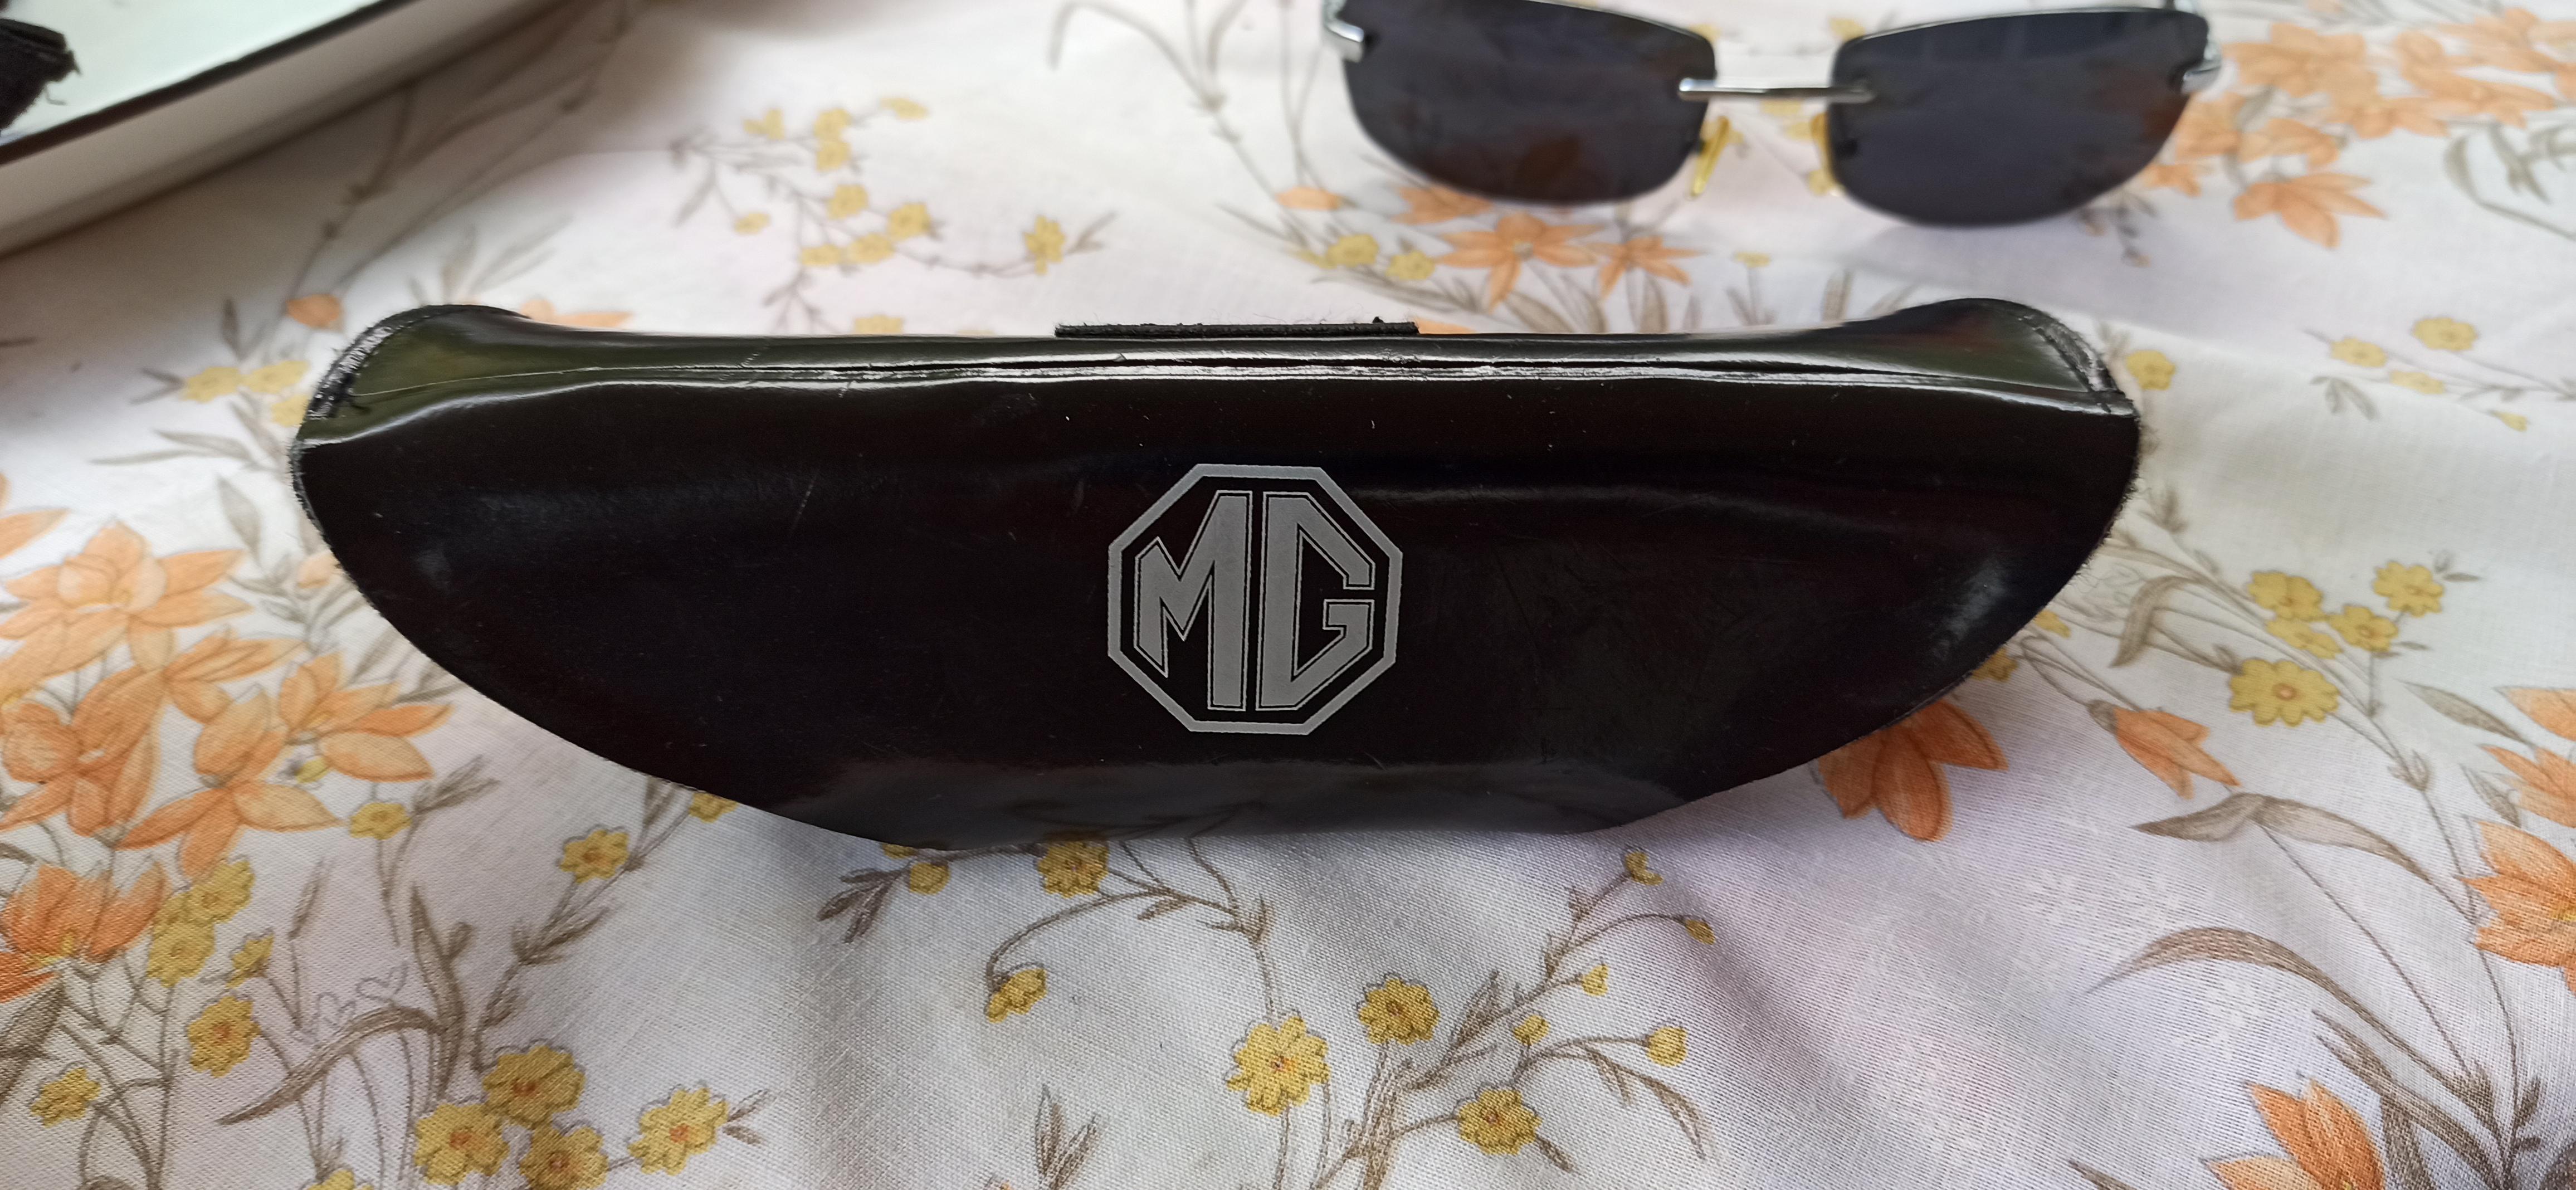 troc de troc lunettes de soleil marque mg (voiture anglaise) image 2